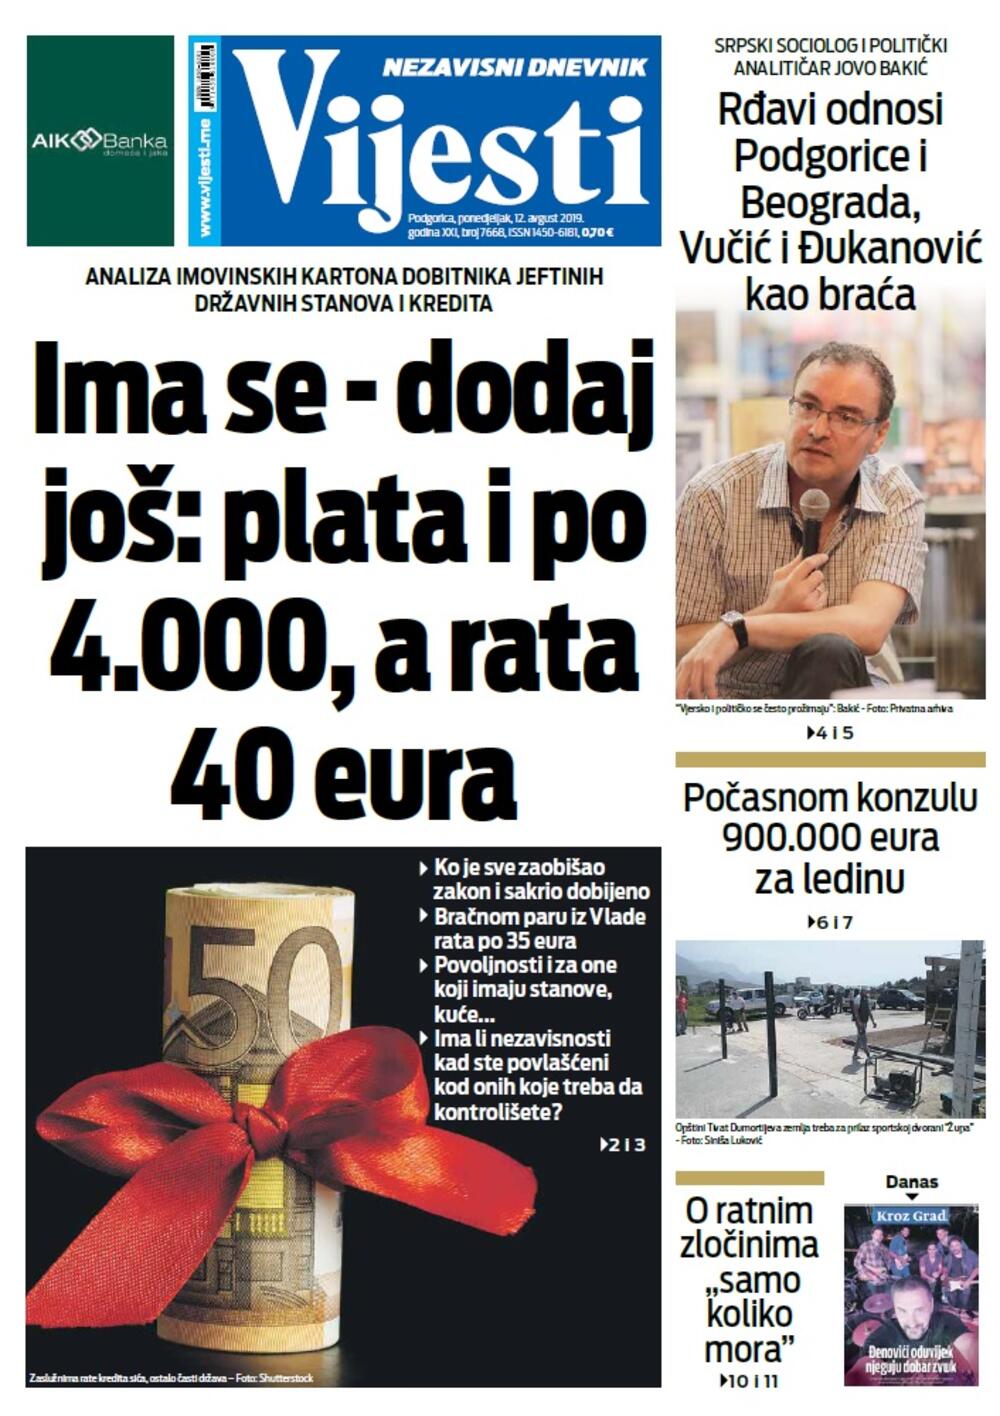 Naslovna strana "Vijesti" za 12. avgust, Foto: Vijesti